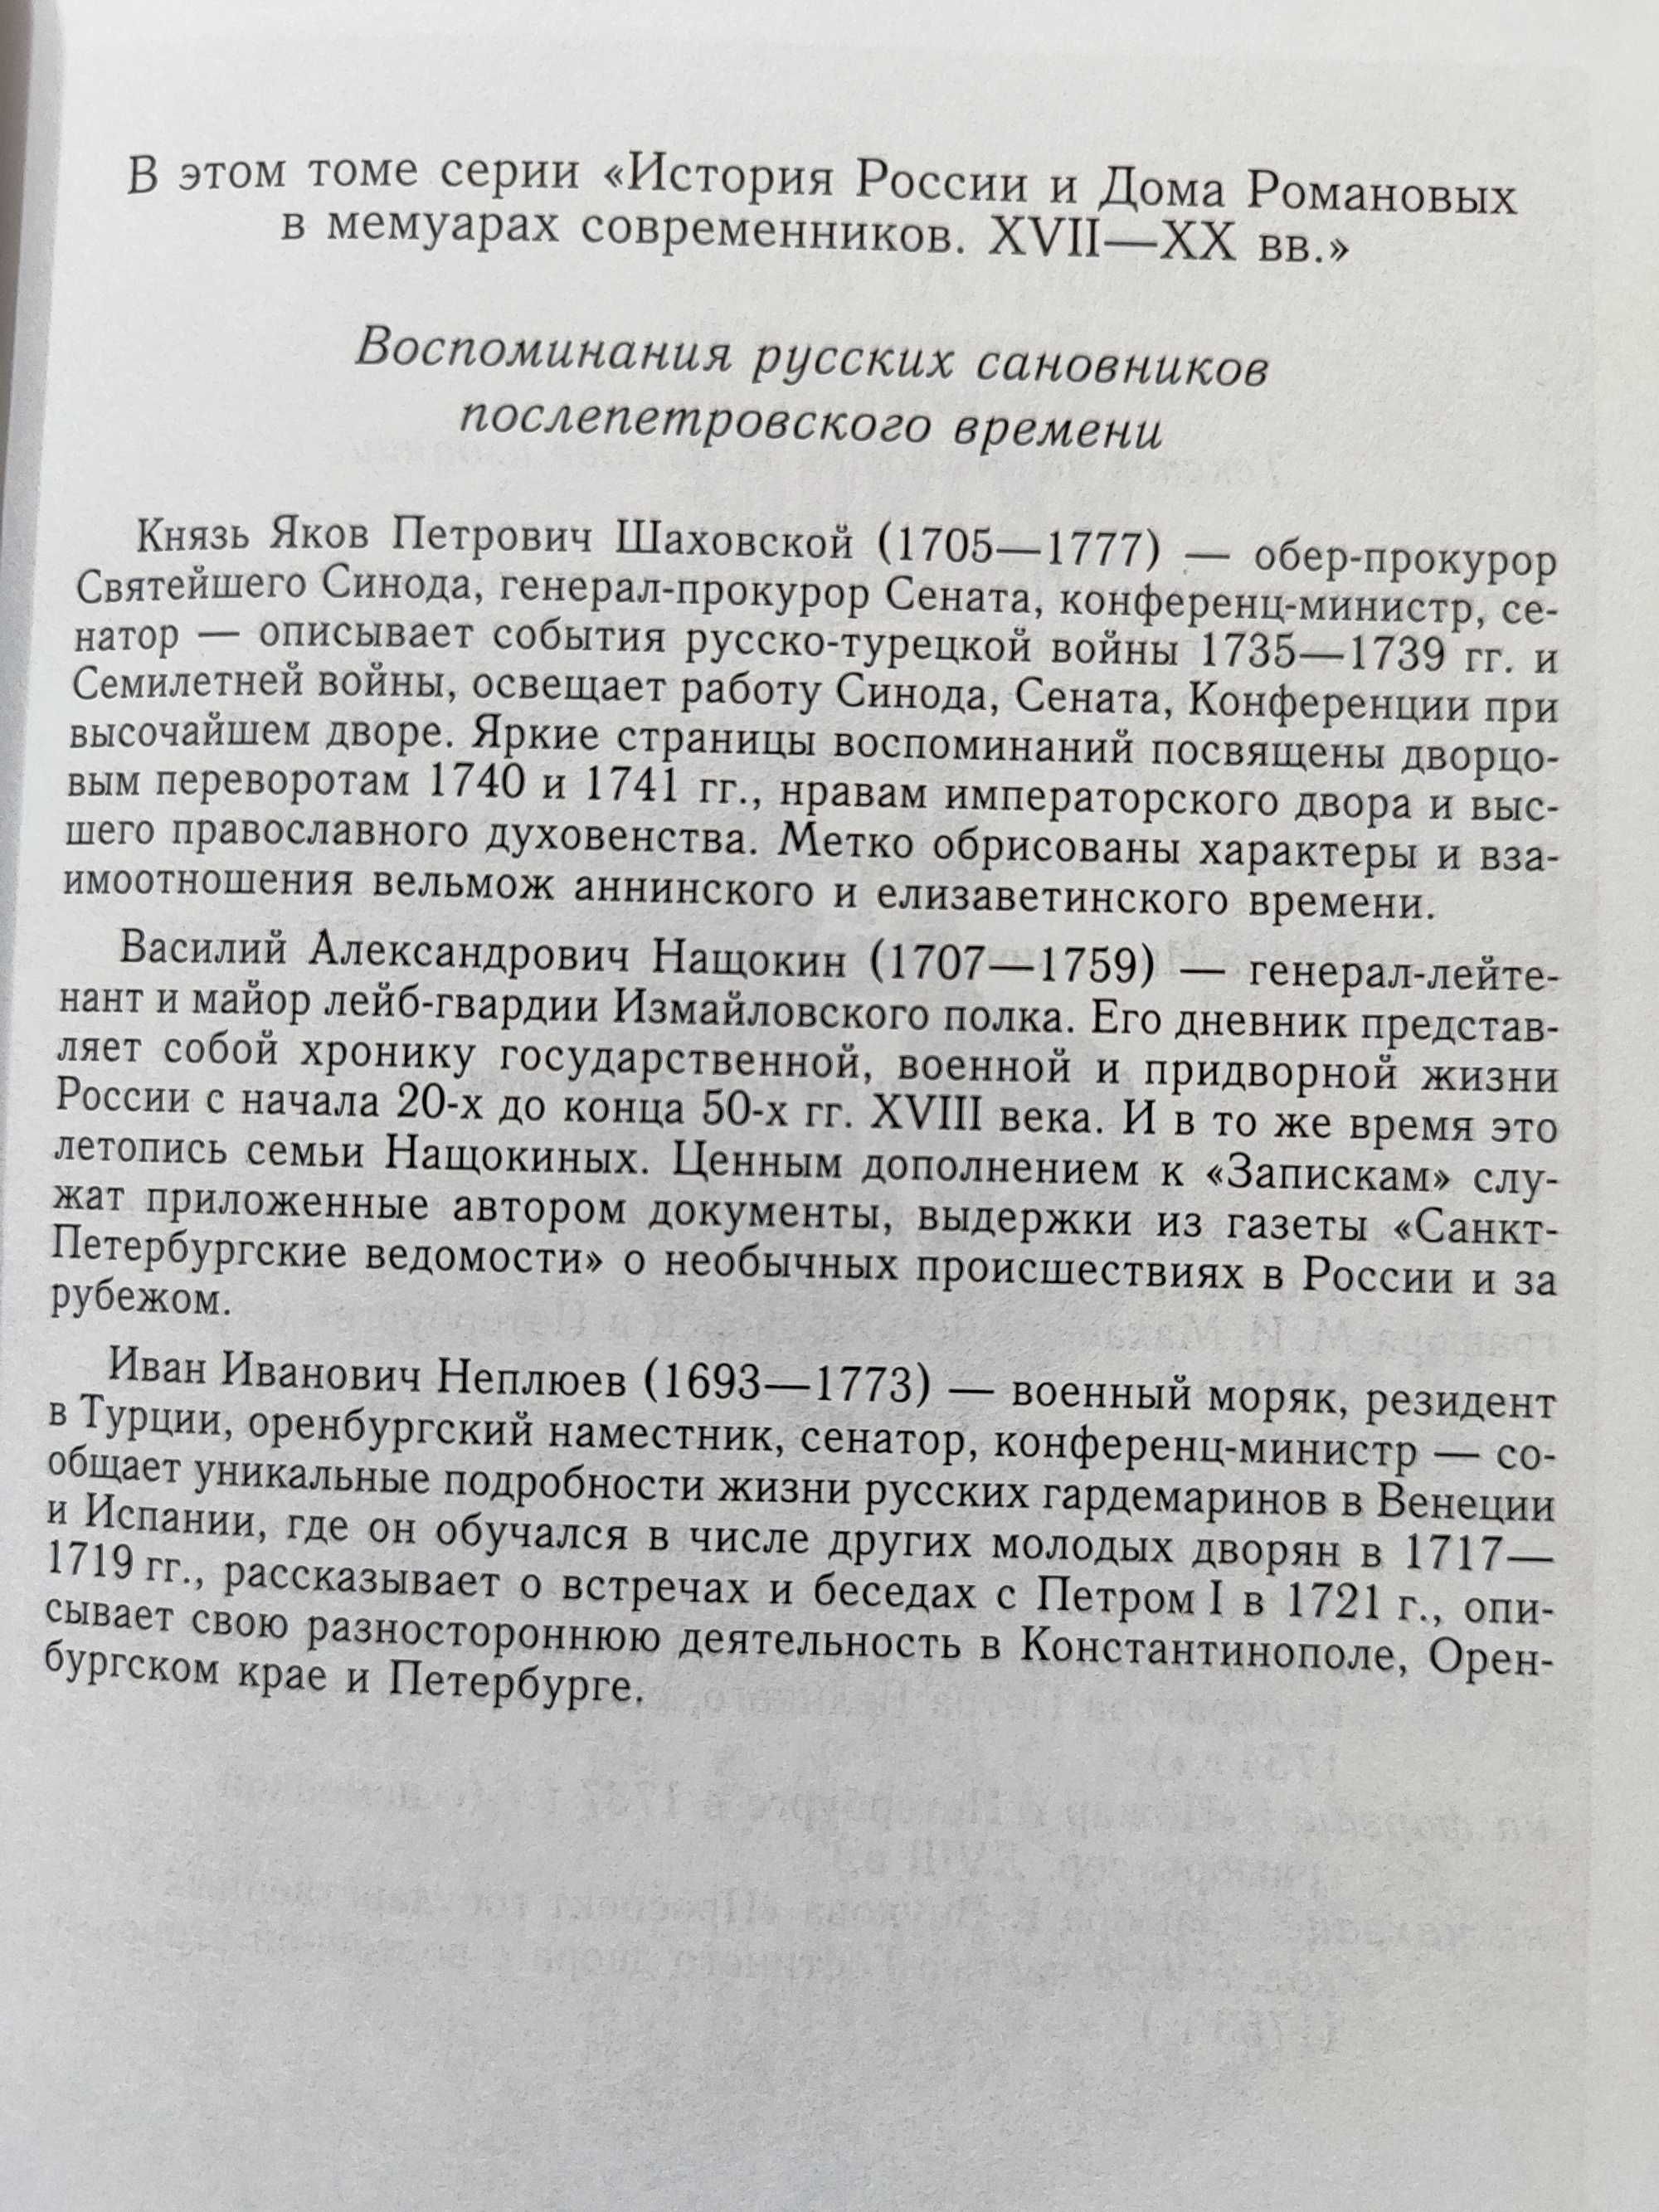 Империя  после Петра. 1725-1765. История России в мемуарах.